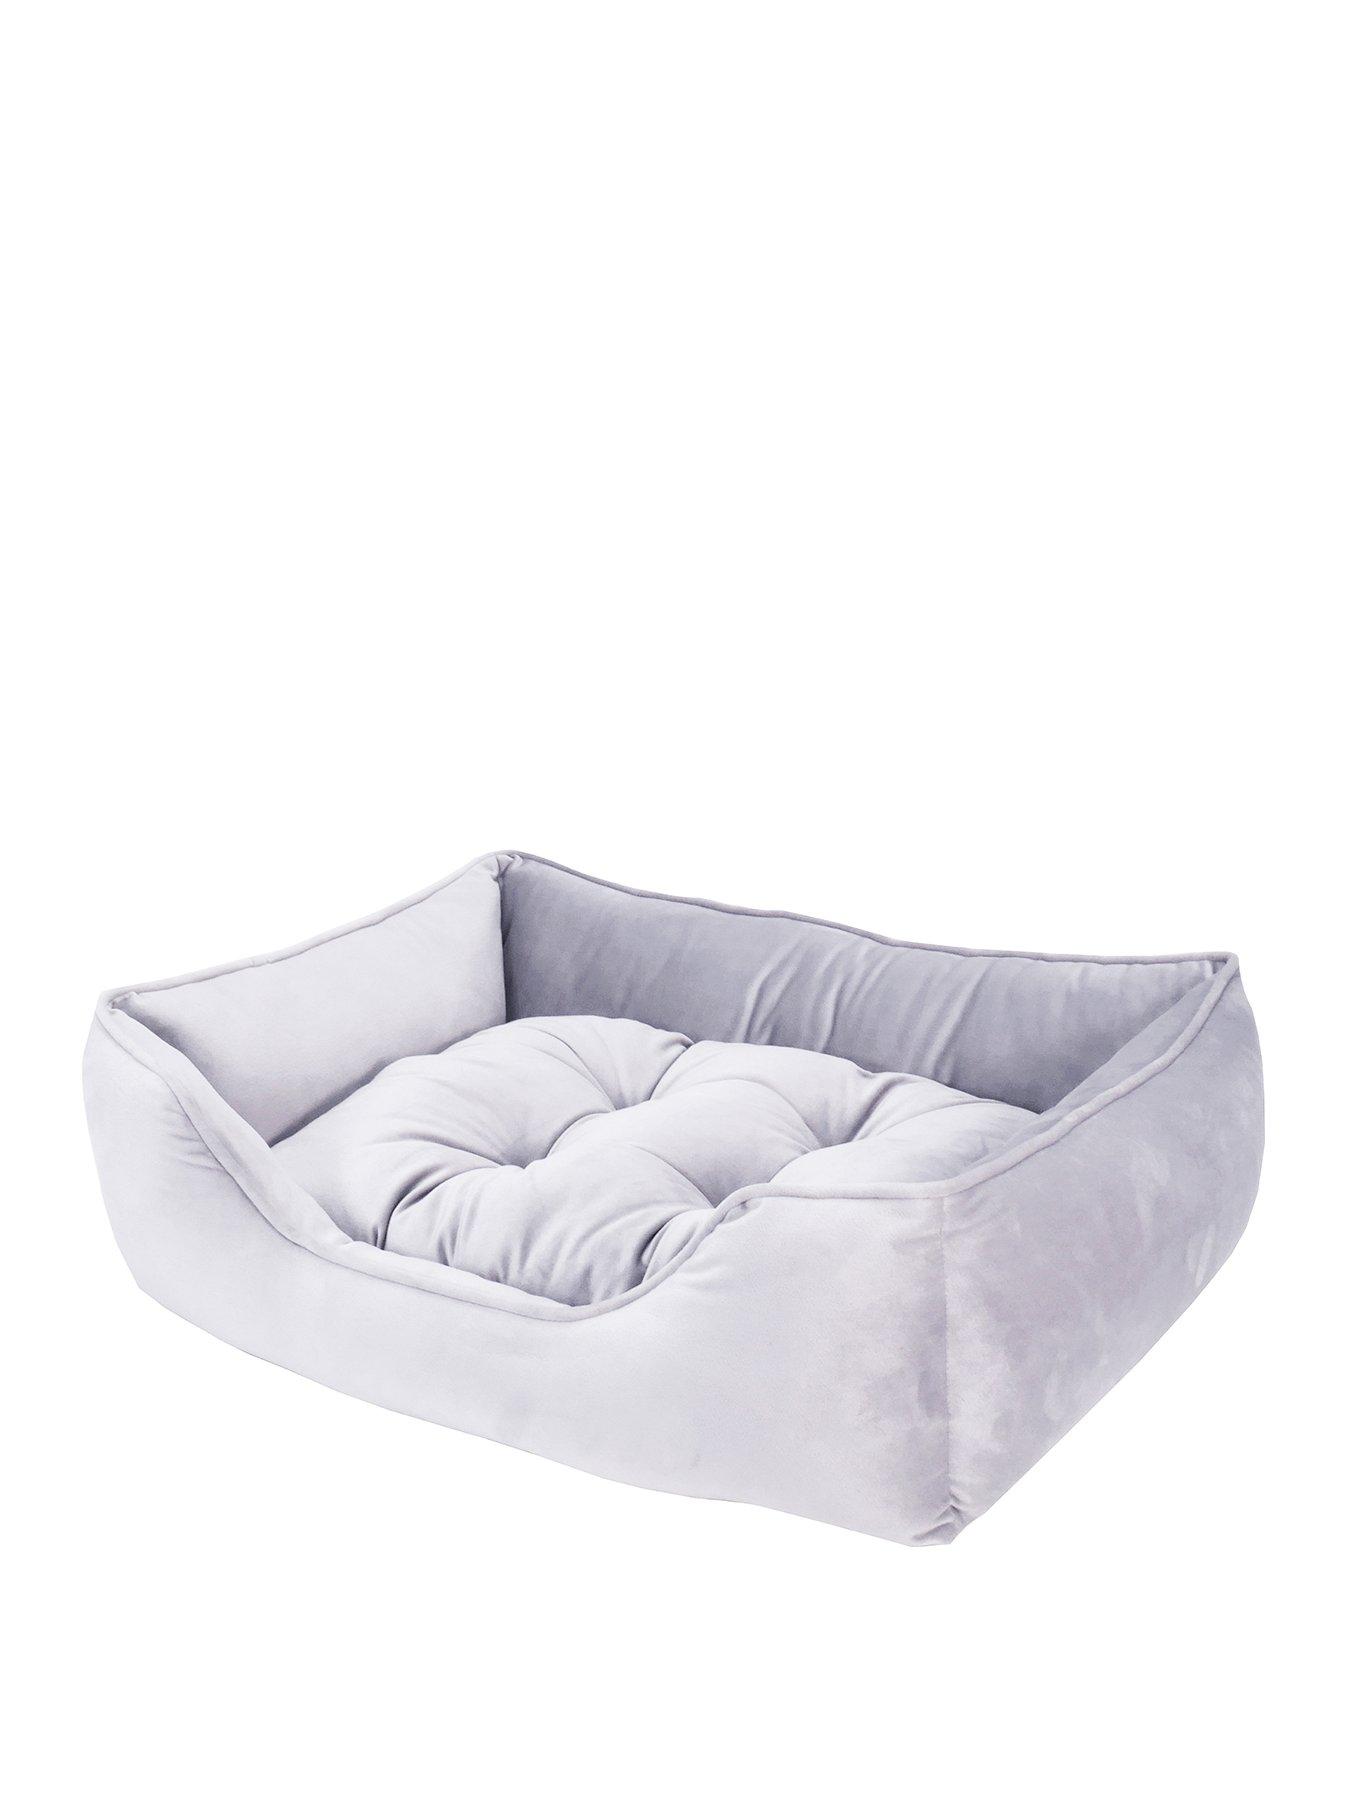 cheap dog beds medium